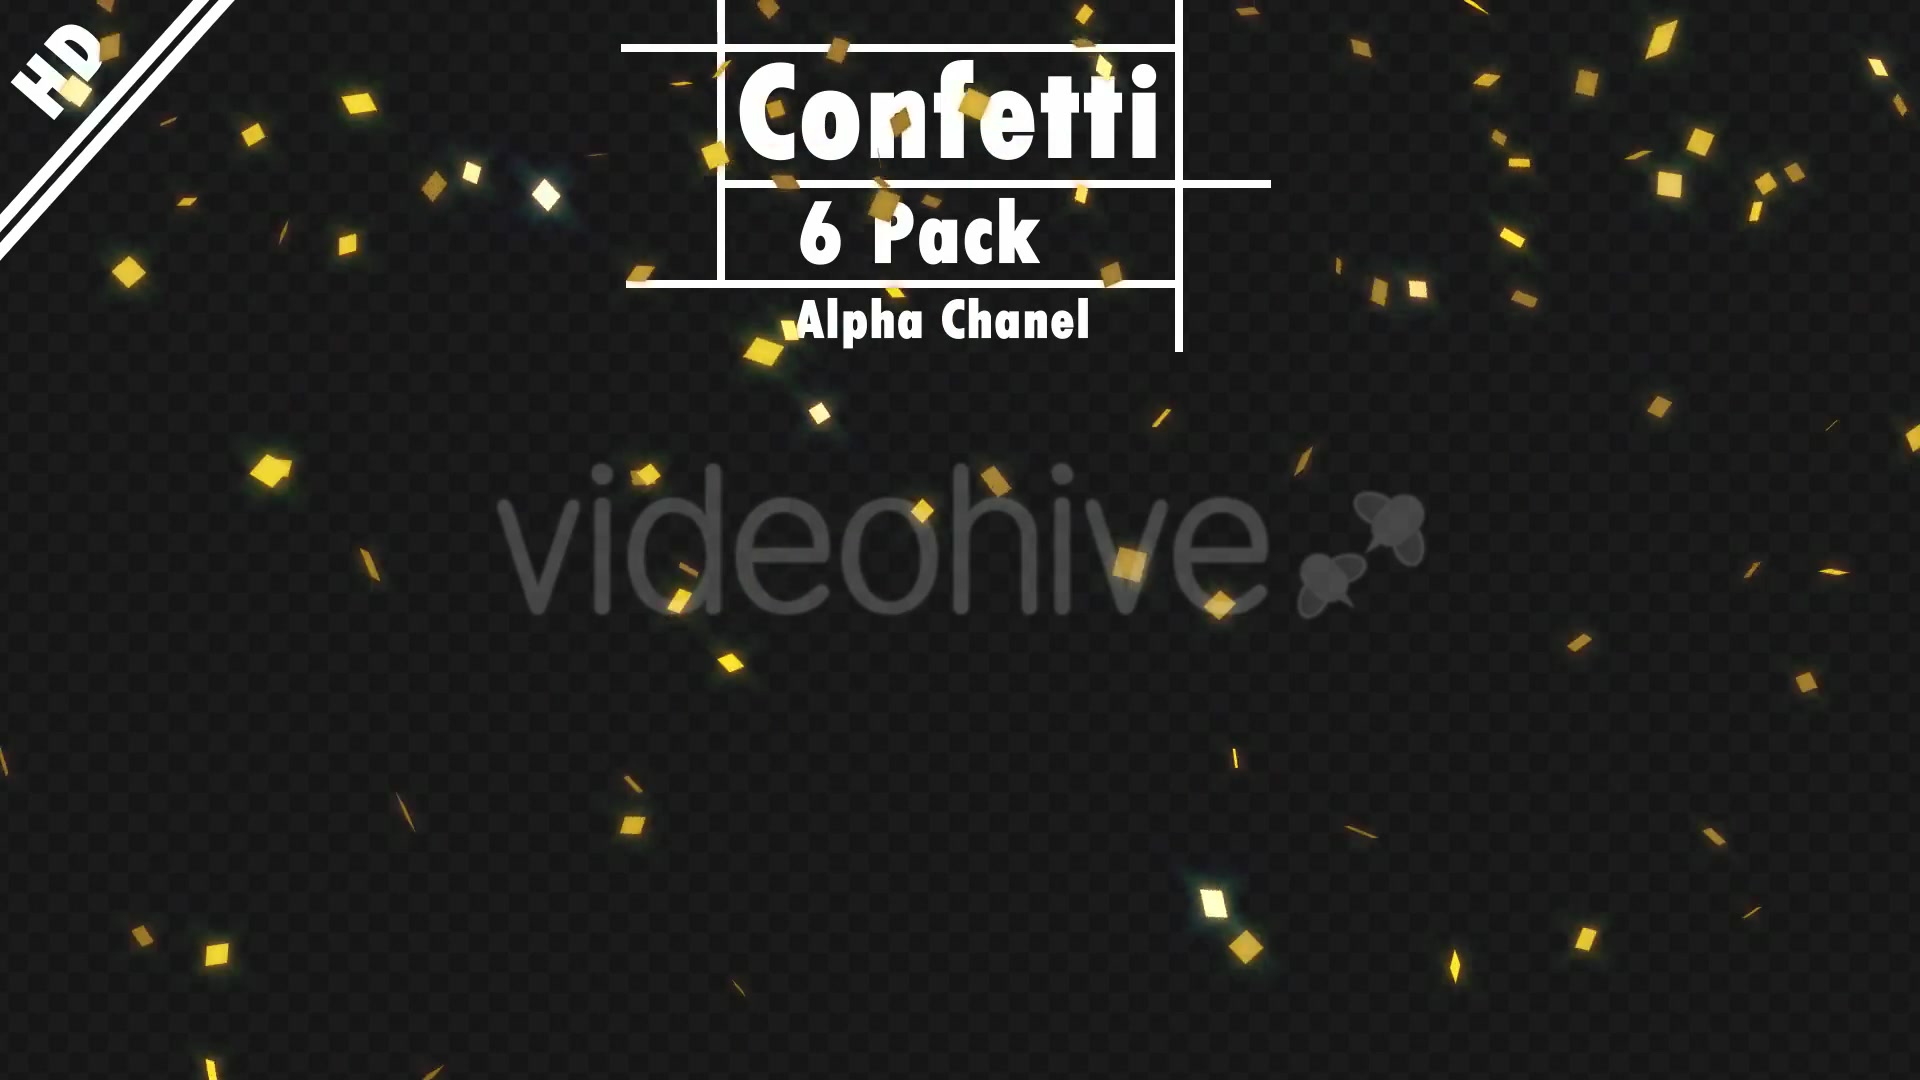 Confetti Videohive 20324822 Motion Graphics Image 6